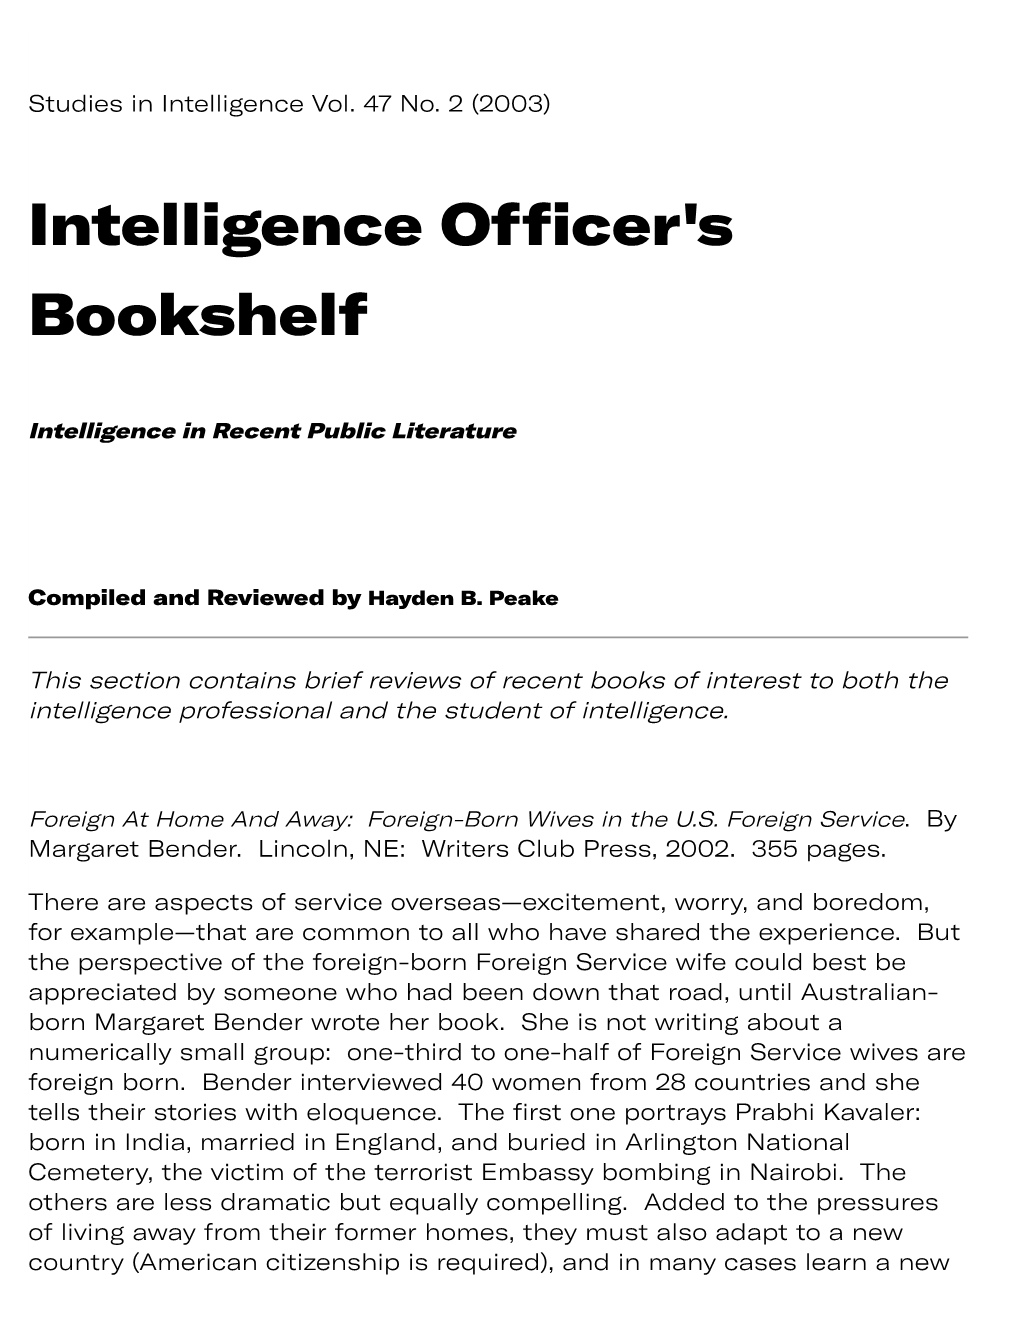 Intelligence Officer's Bookshelf